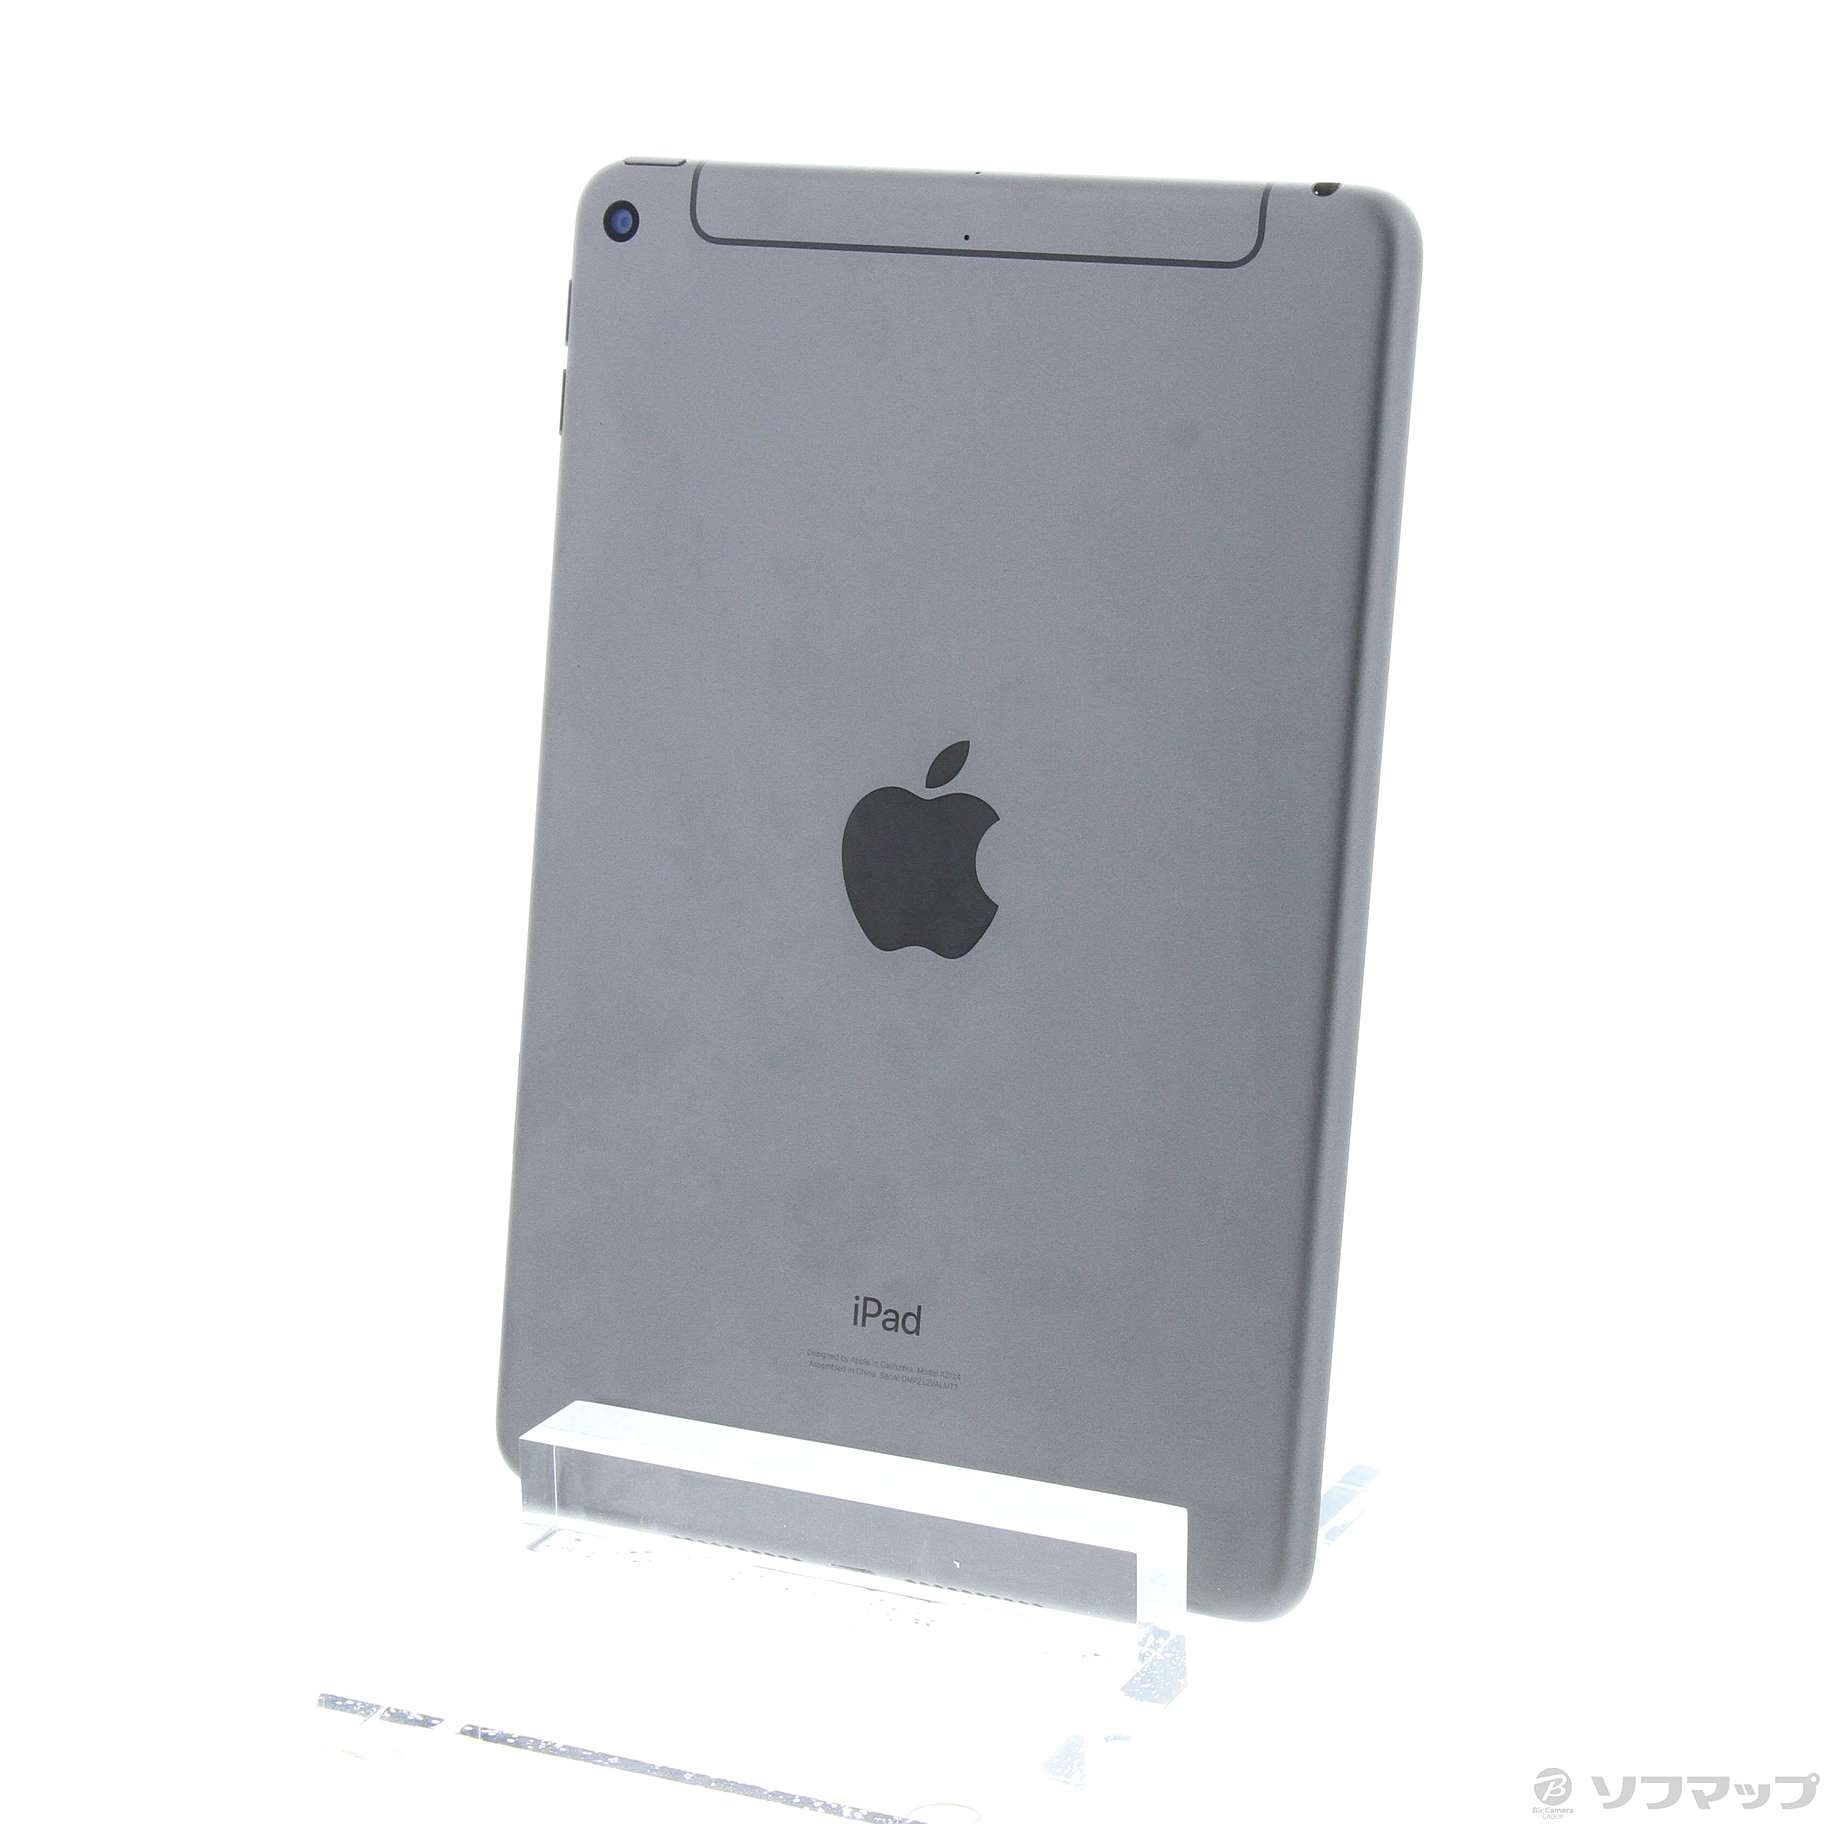 売れ筋商品 iPad mini 第5世代 64GB スペースグレイ | www.artfive.co.jp